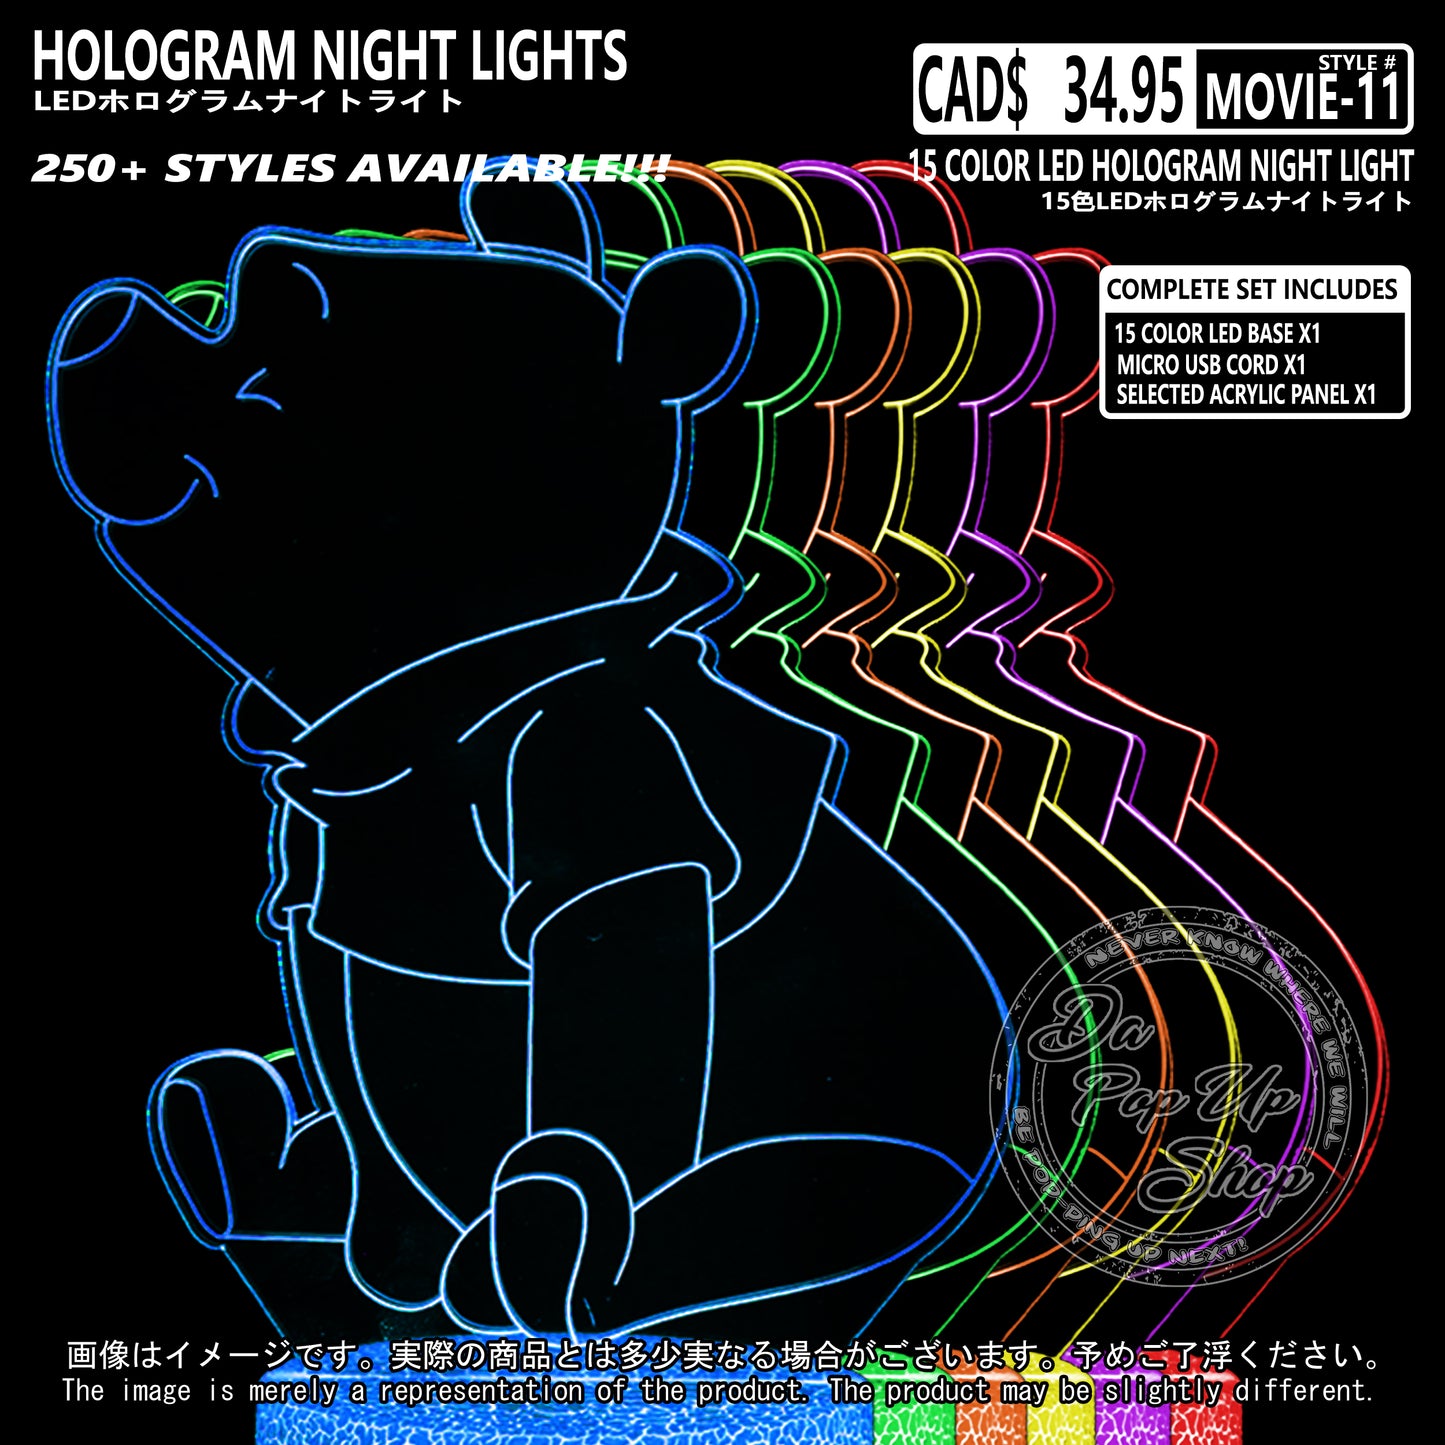 (MOVIE-11) Winnie the Pooh Hologram LED Night Light